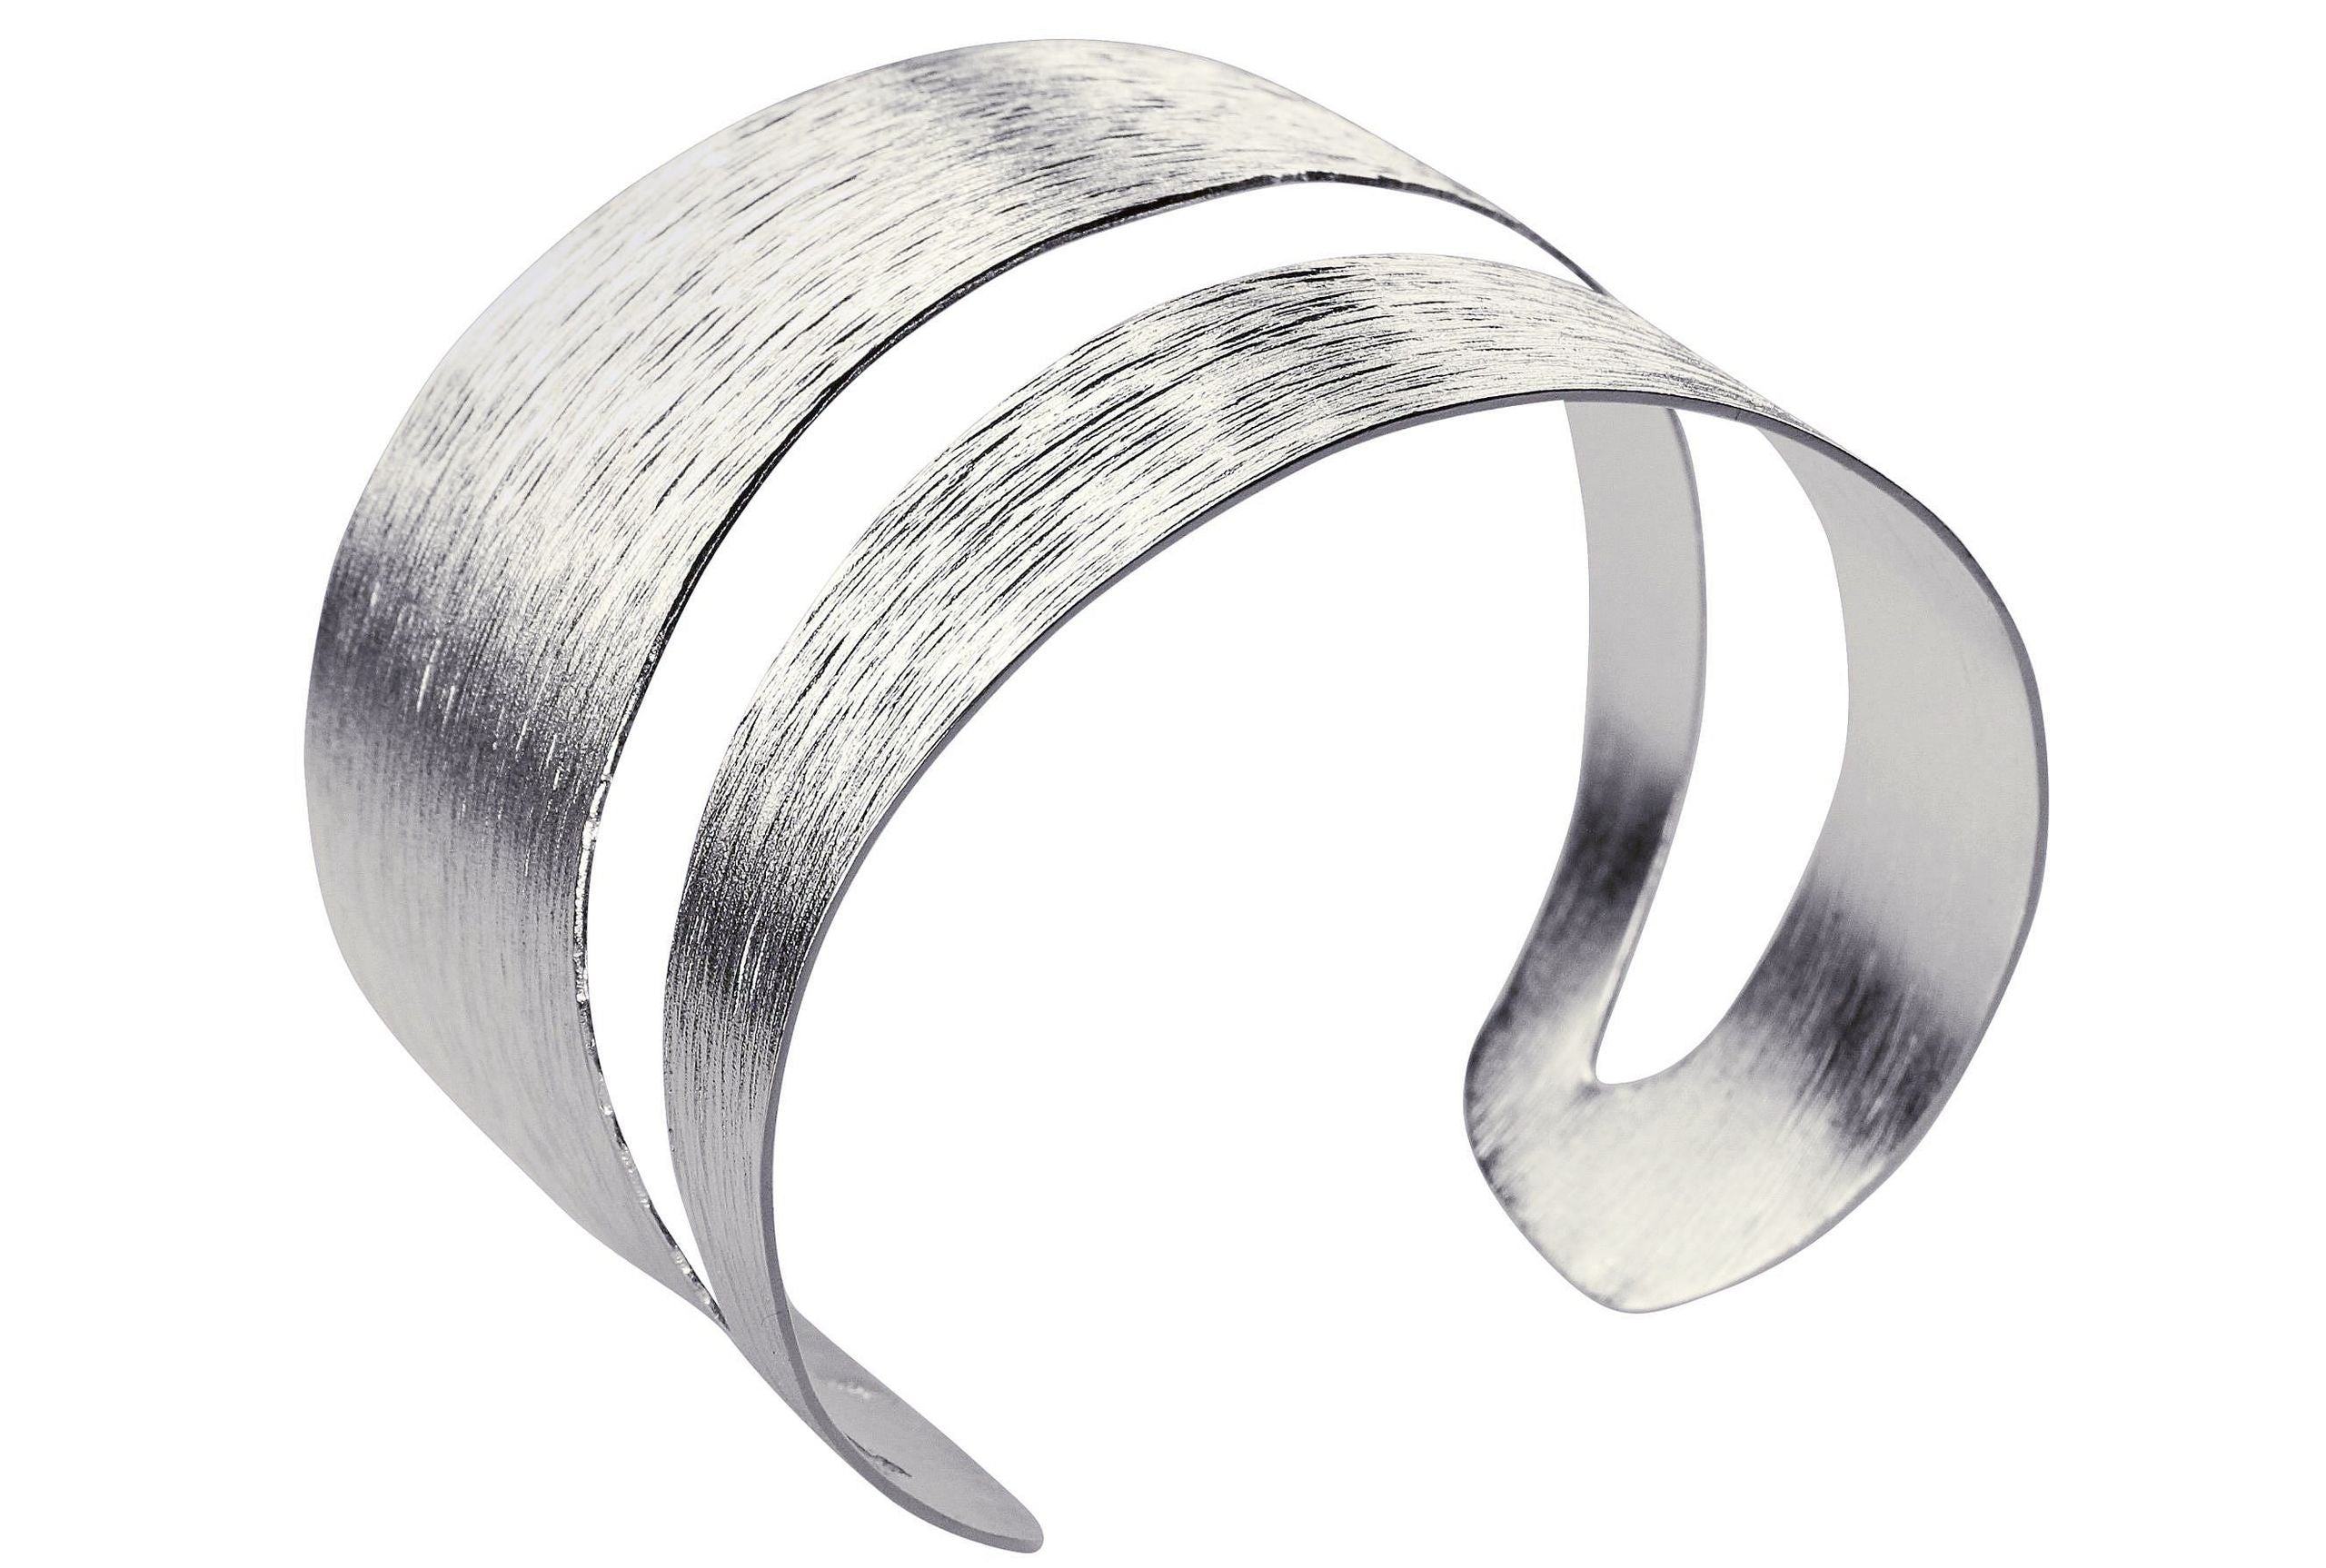 Ein Armreif aus Silber für Damen mit einer diagonalen Aussparung als Blickfang und einer matten Oberfläche mit gewellter Struktur.